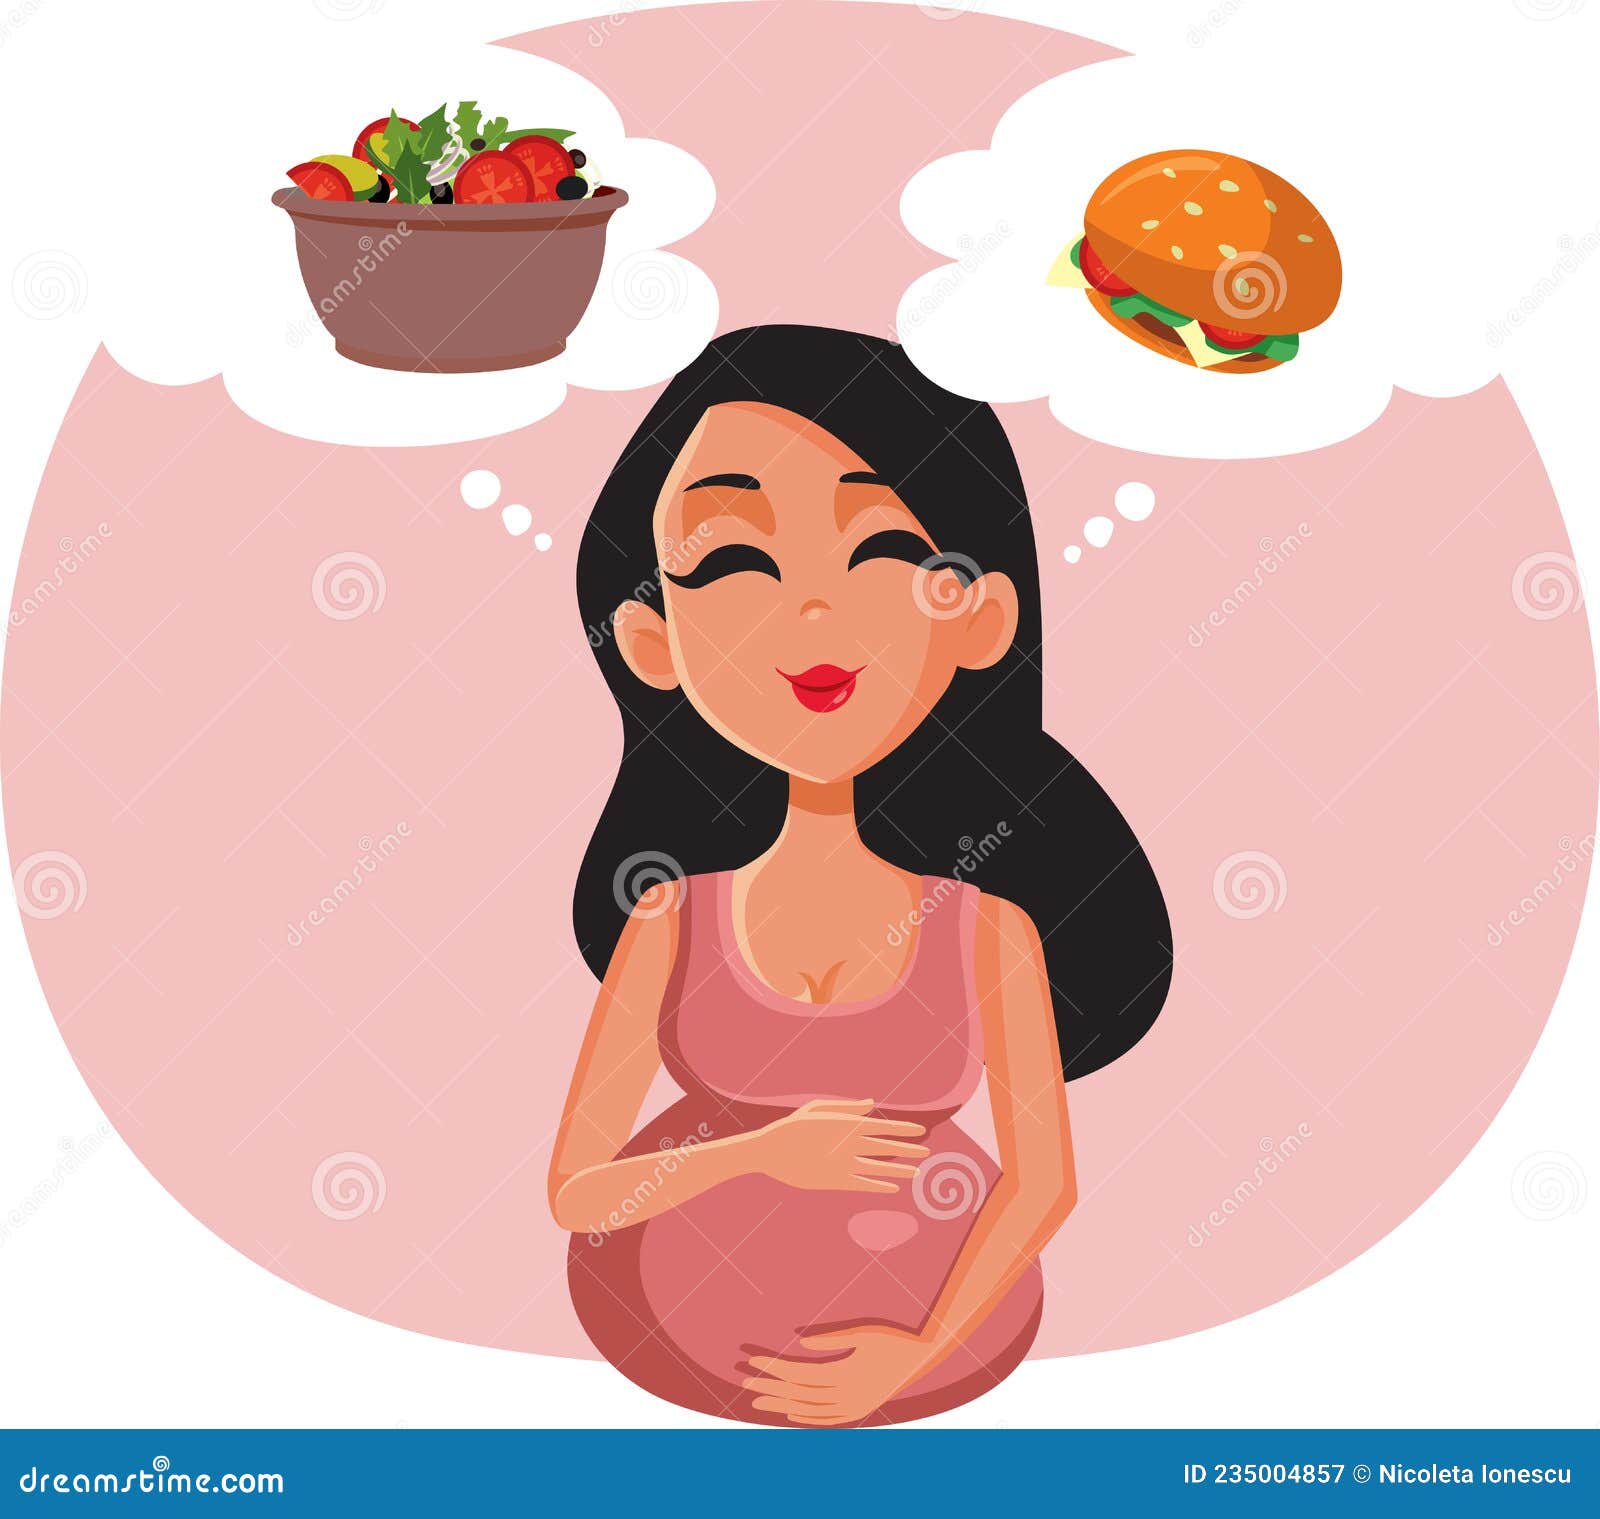 desenho mulher gravida - engraçado - Pesquisa Google